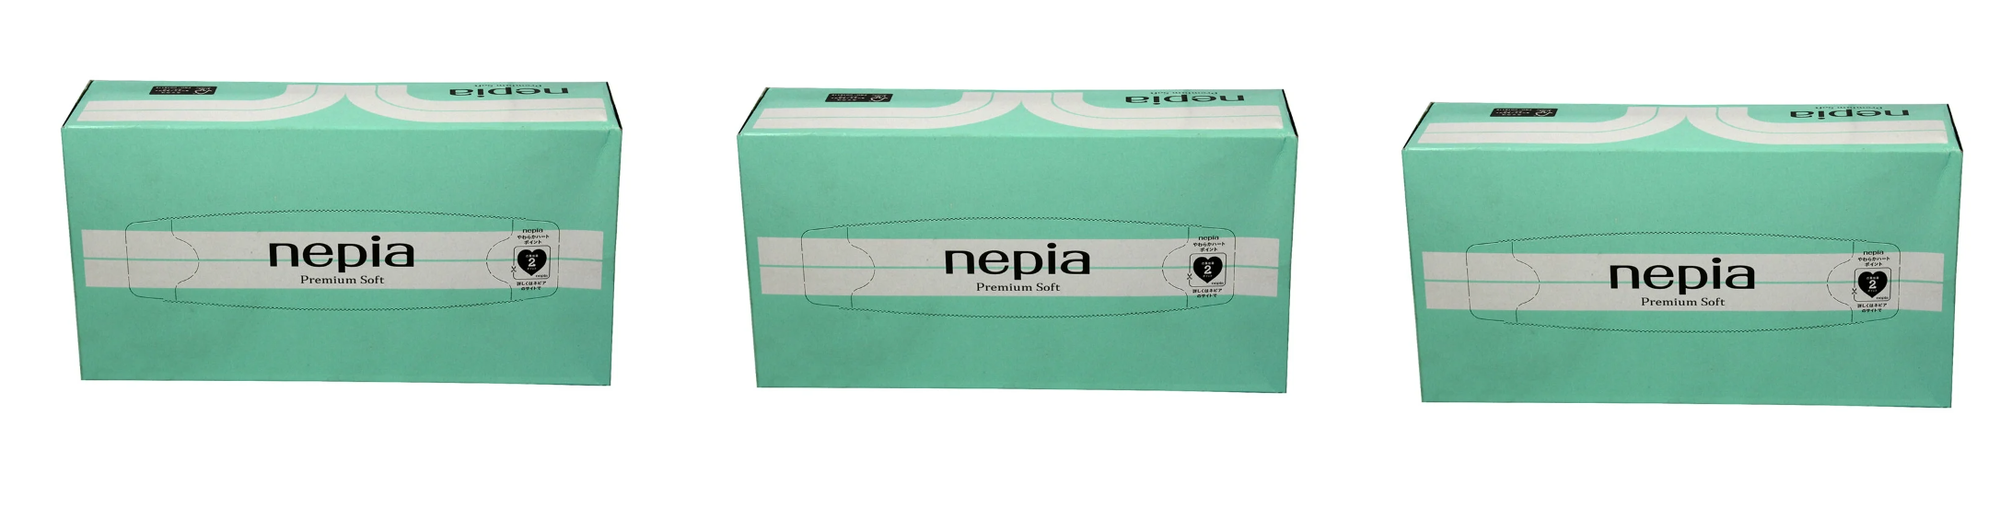 Nepia Салфетки бумажные Premium Soft, 180 шт в уп, 3 уп/